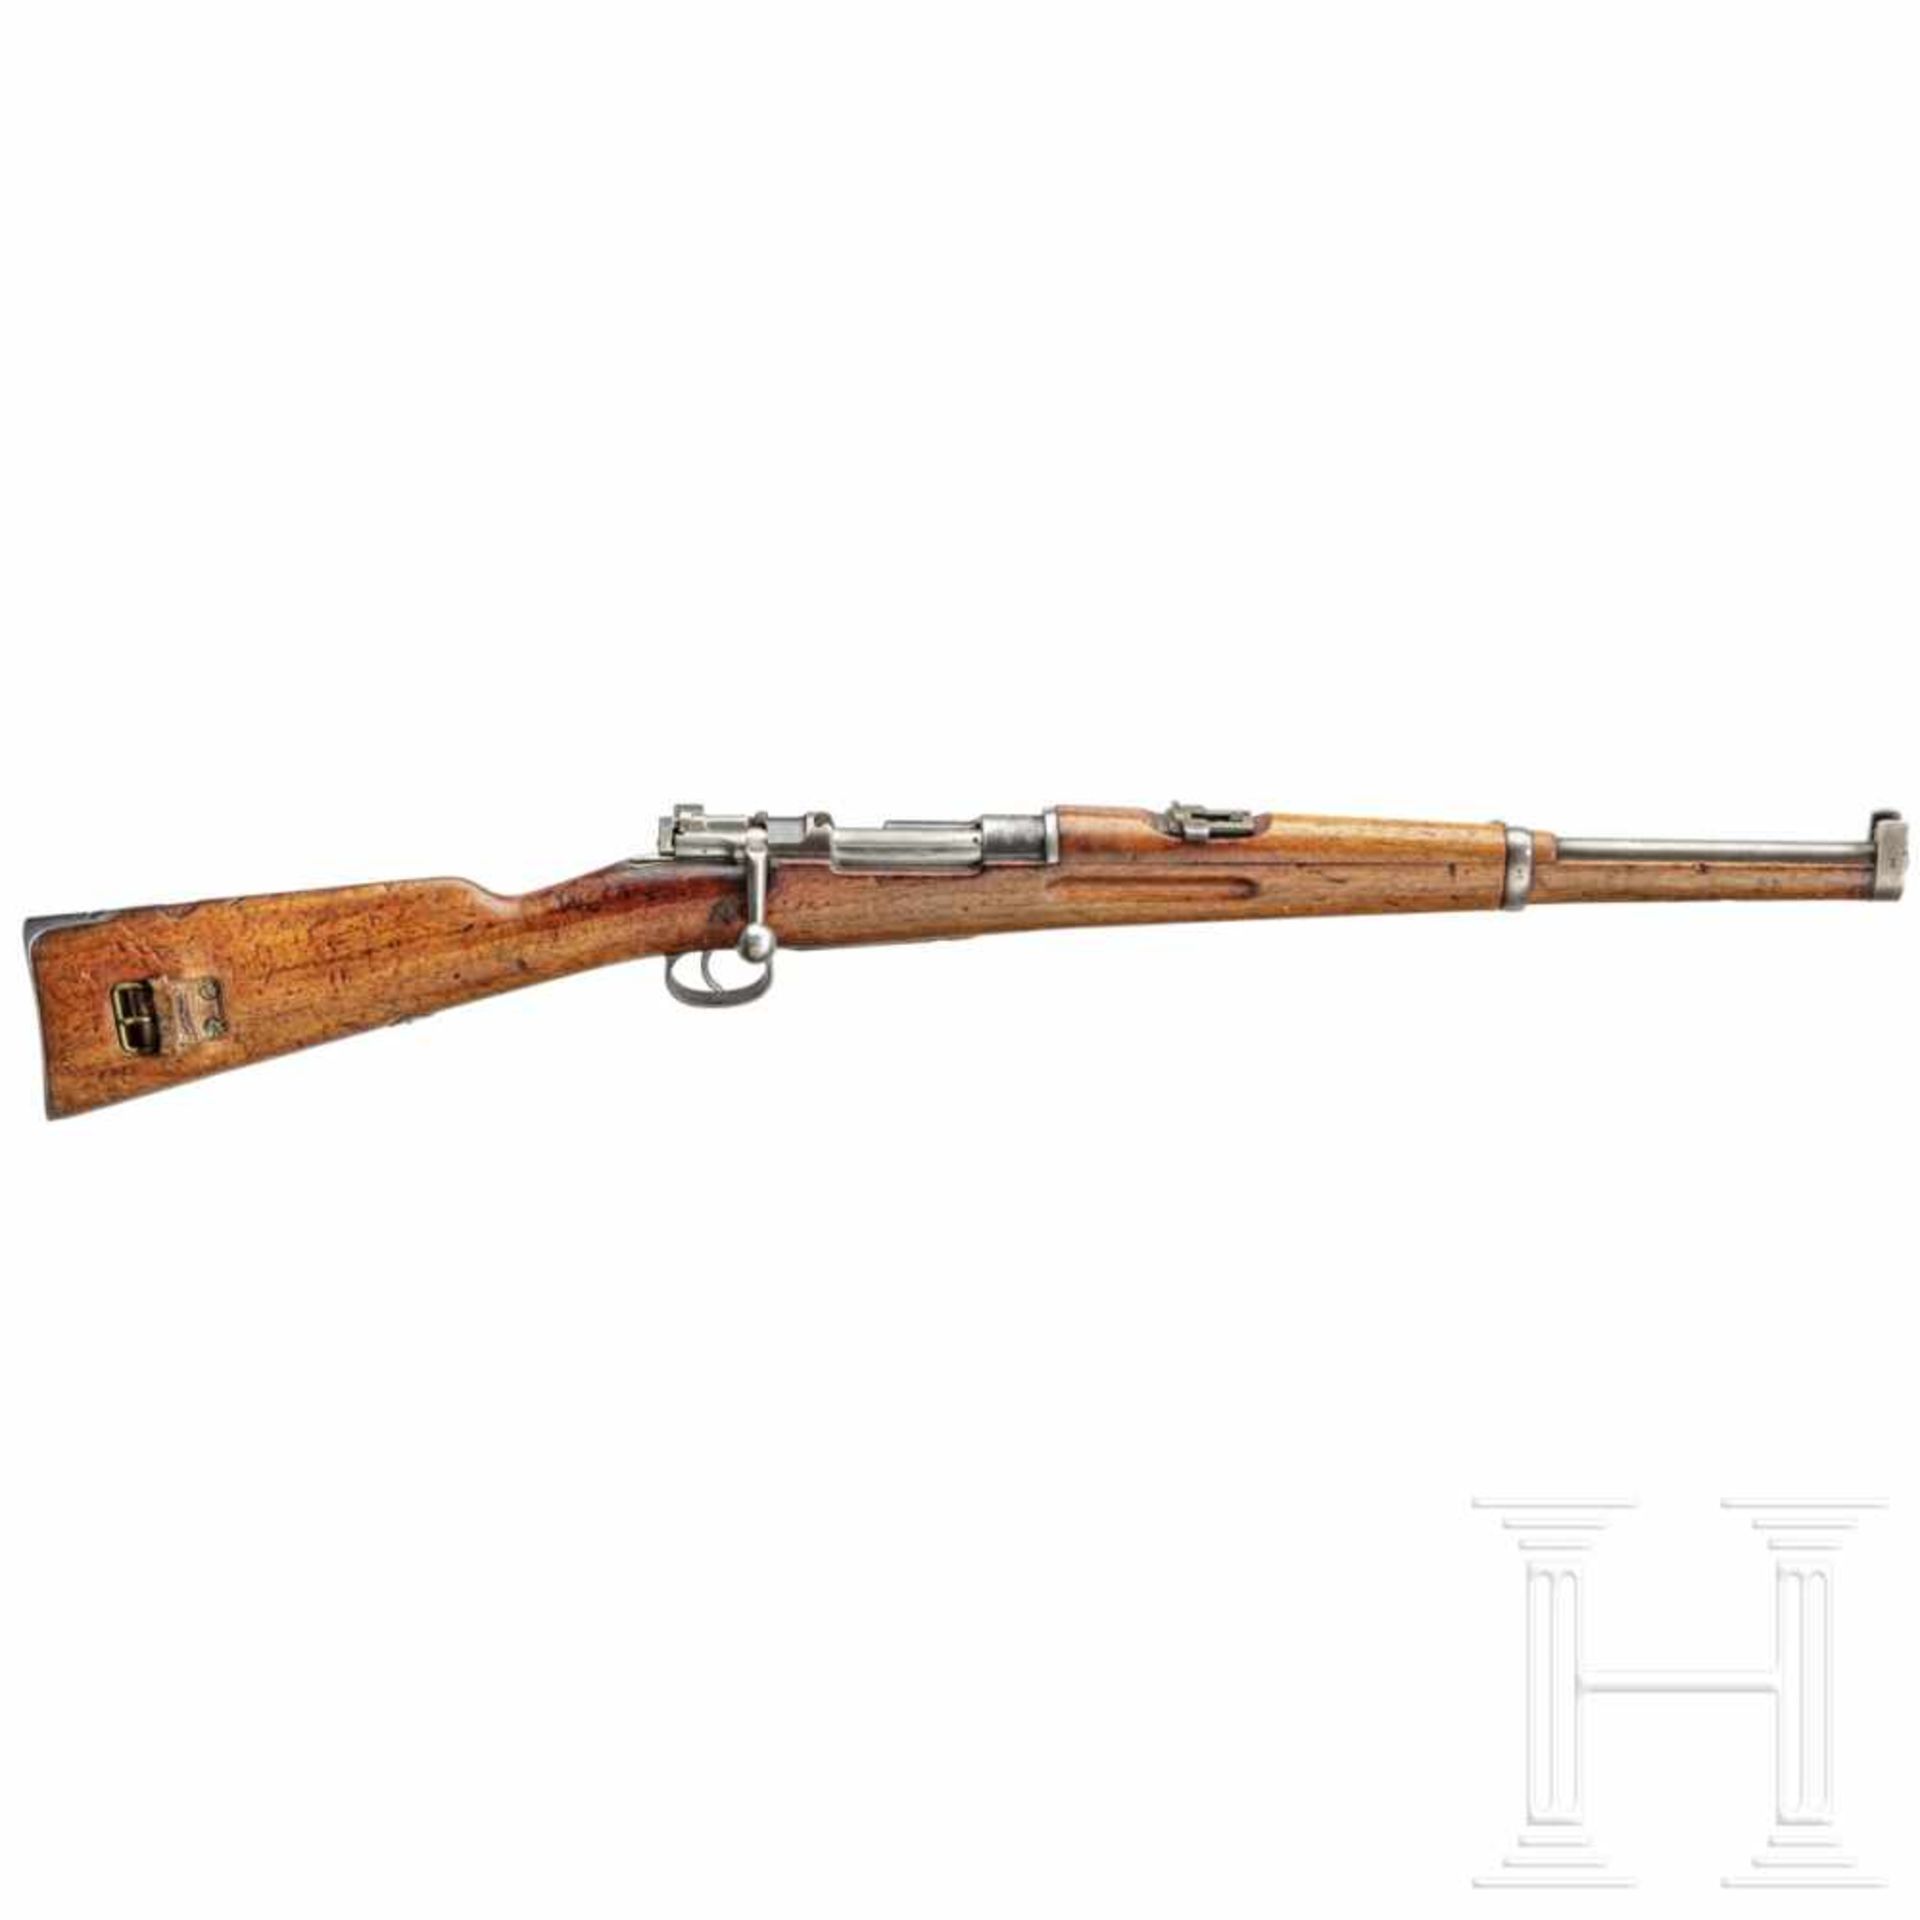 A M 94 carbine, Mauser 1895Kal. 6,5x55, Nr. 1951, nummerngleich. Fast blanker Lauf. Fünfschüssig.